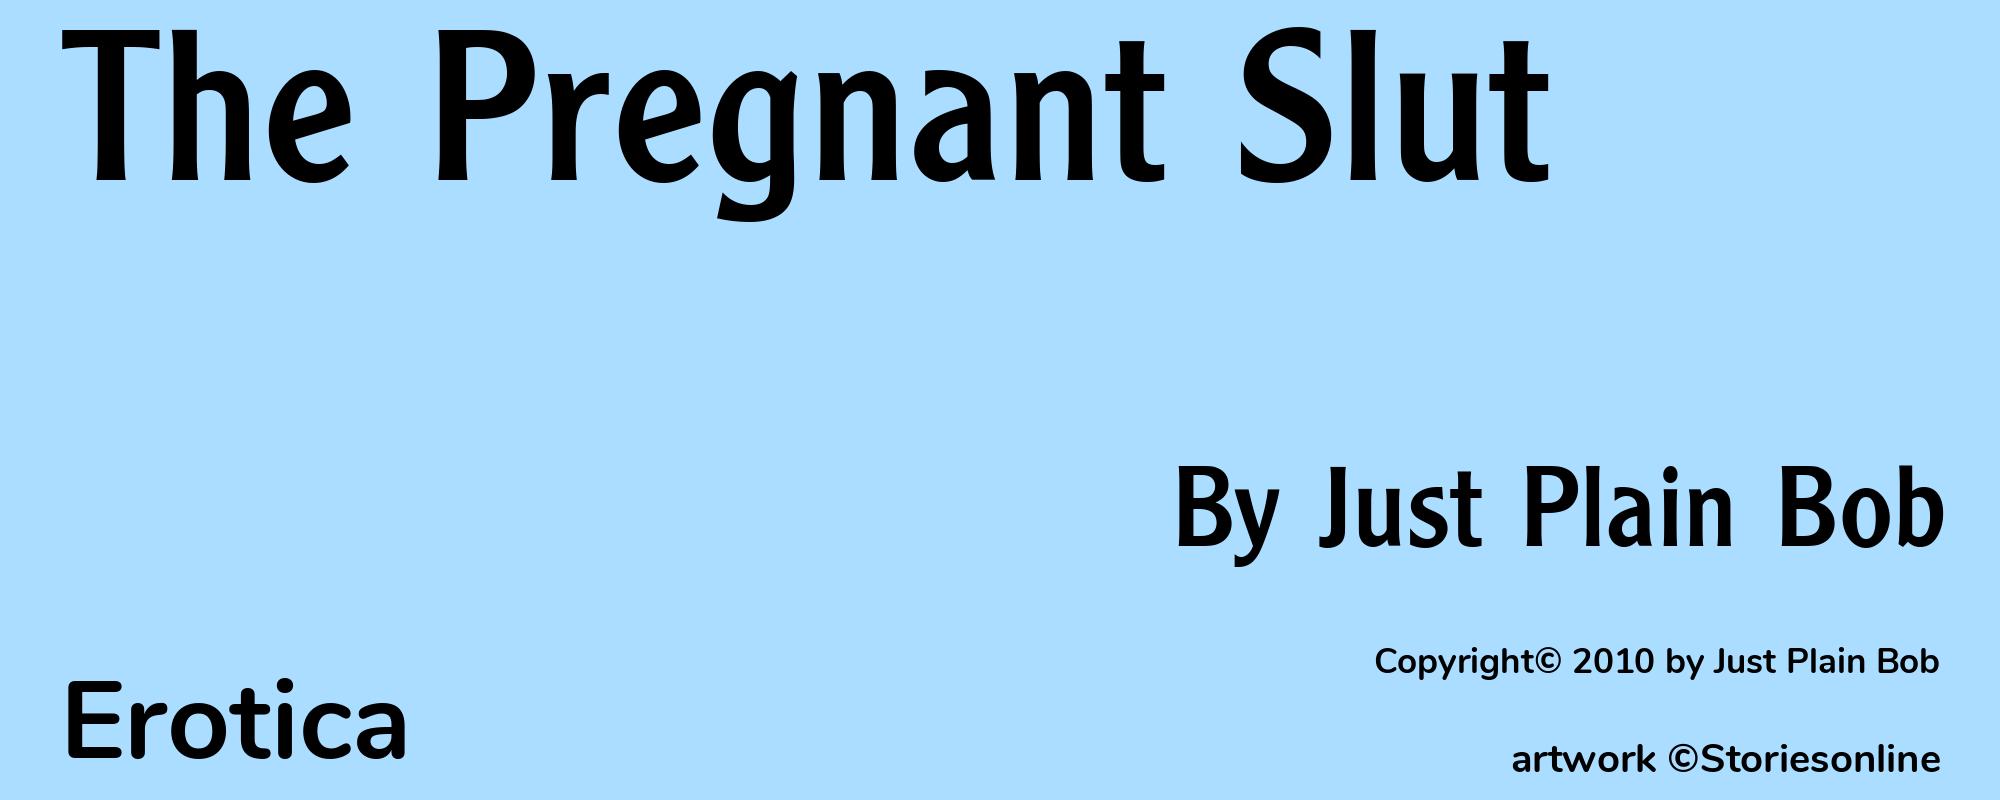 The Pregnant Slut - Cover